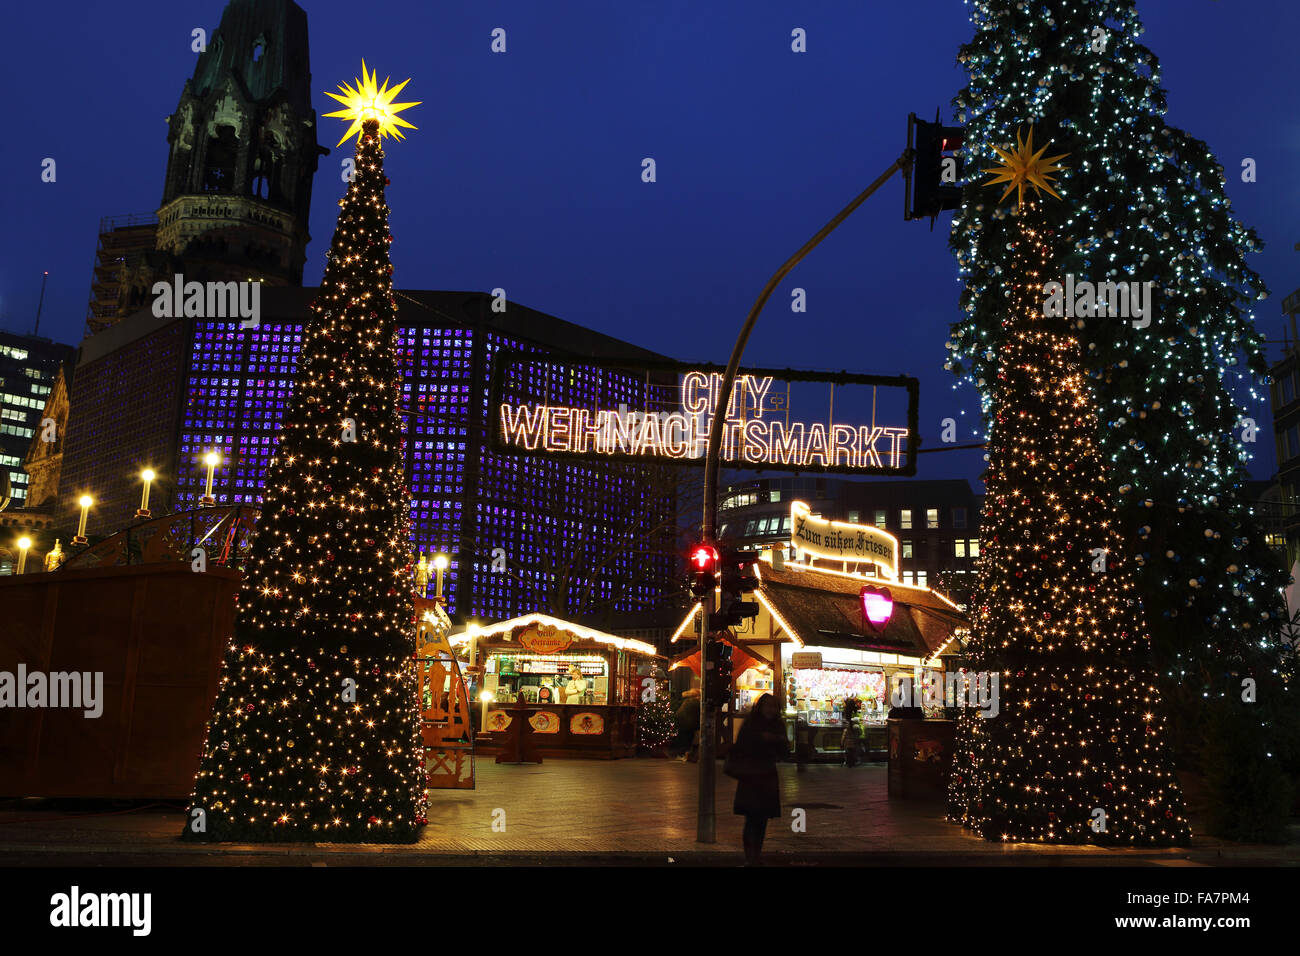 Der Stadt-Weihnachtsmarkt bin Gedachtniskirche Weihnachtsmarkt am Ku'damm in Berlin, Deutschland. Stockfoto